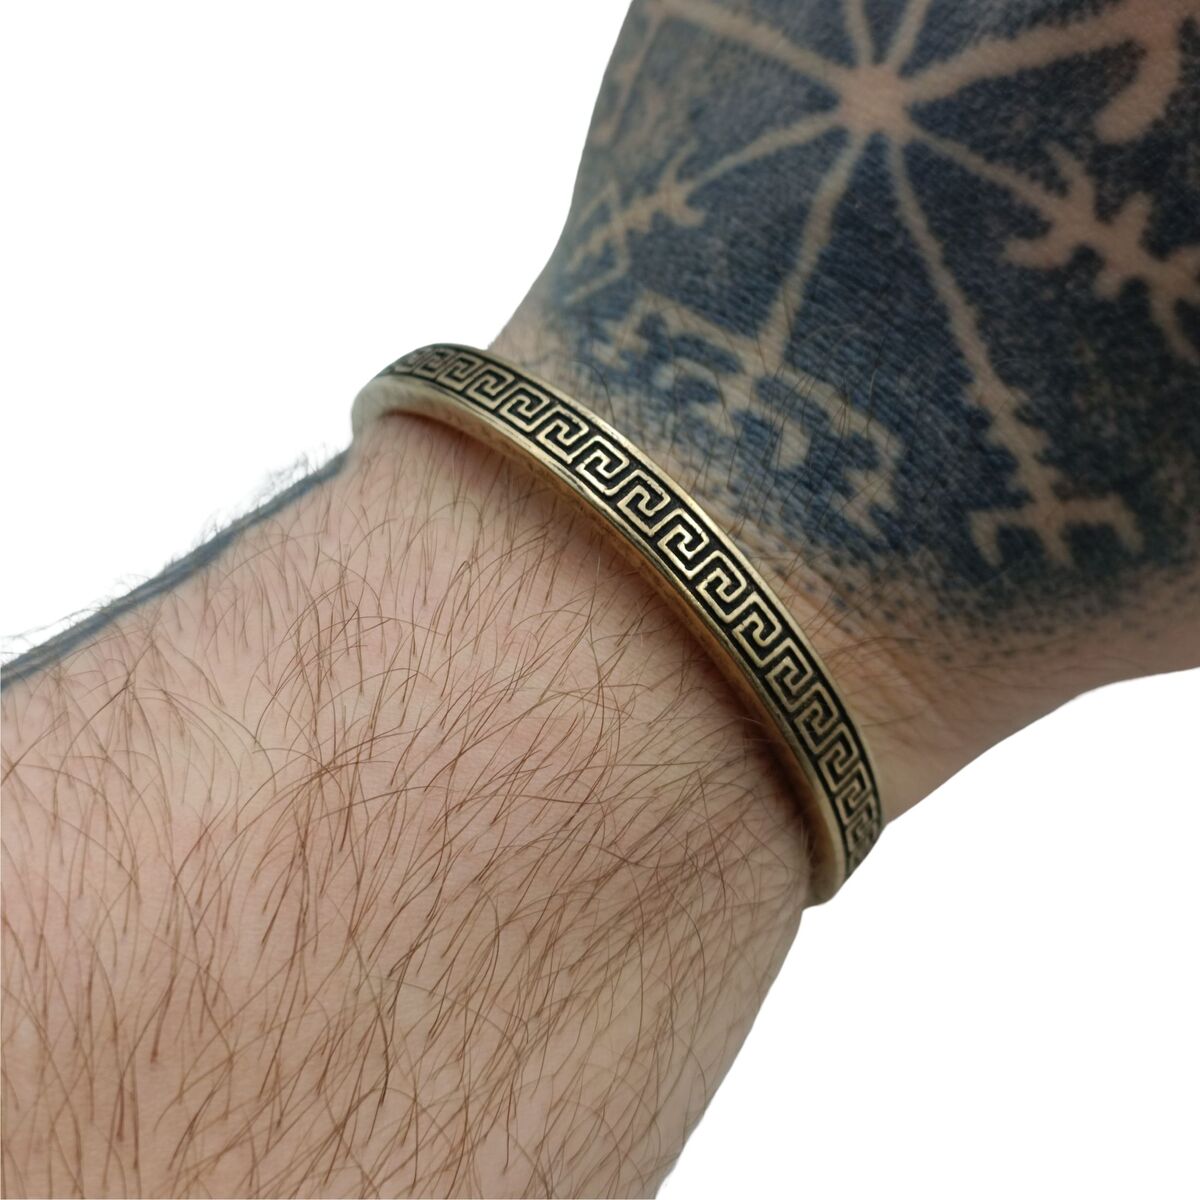 Greek cuff bracelet